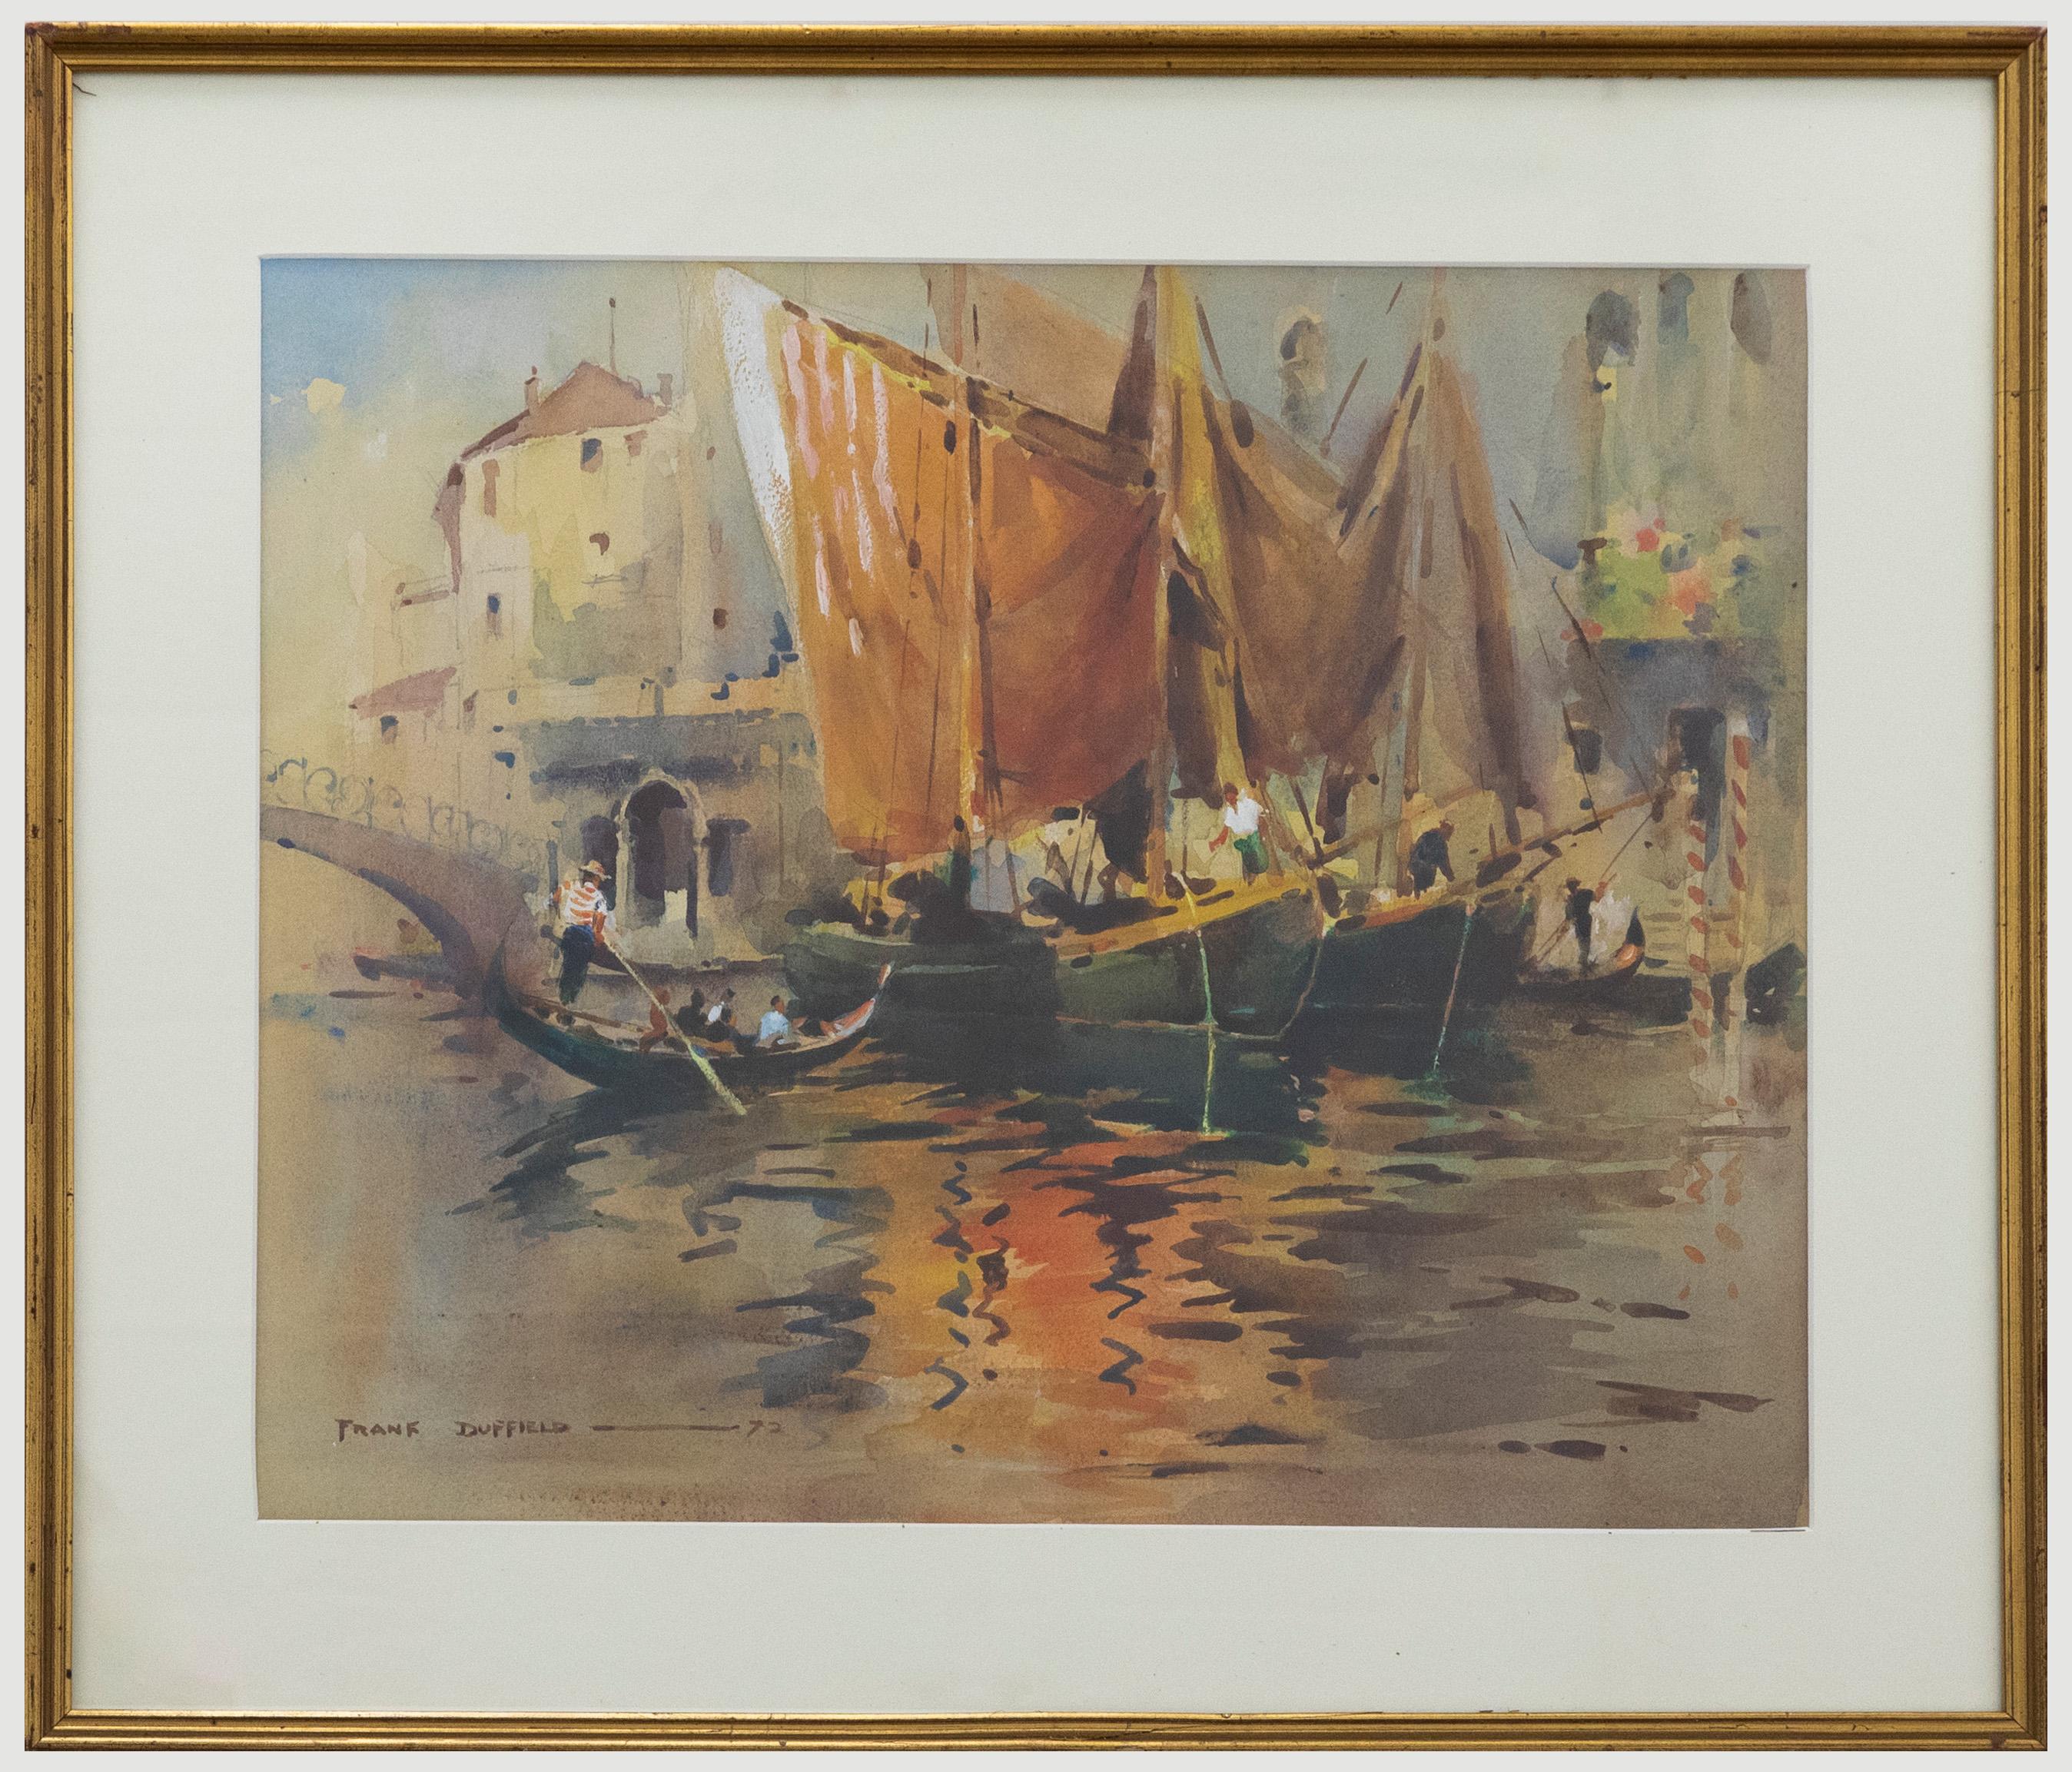 Eine reizvolle Darstellung von Gondeln, die auf einem venezianischen Kanal aufgereiht sind. Die Künstlerin hält die Boote in weichen Aquarelldetails mit Graphitflächen fest. Signiert und datiert unten rechts. Präsentiert in einem vergoldeten Rahmen.